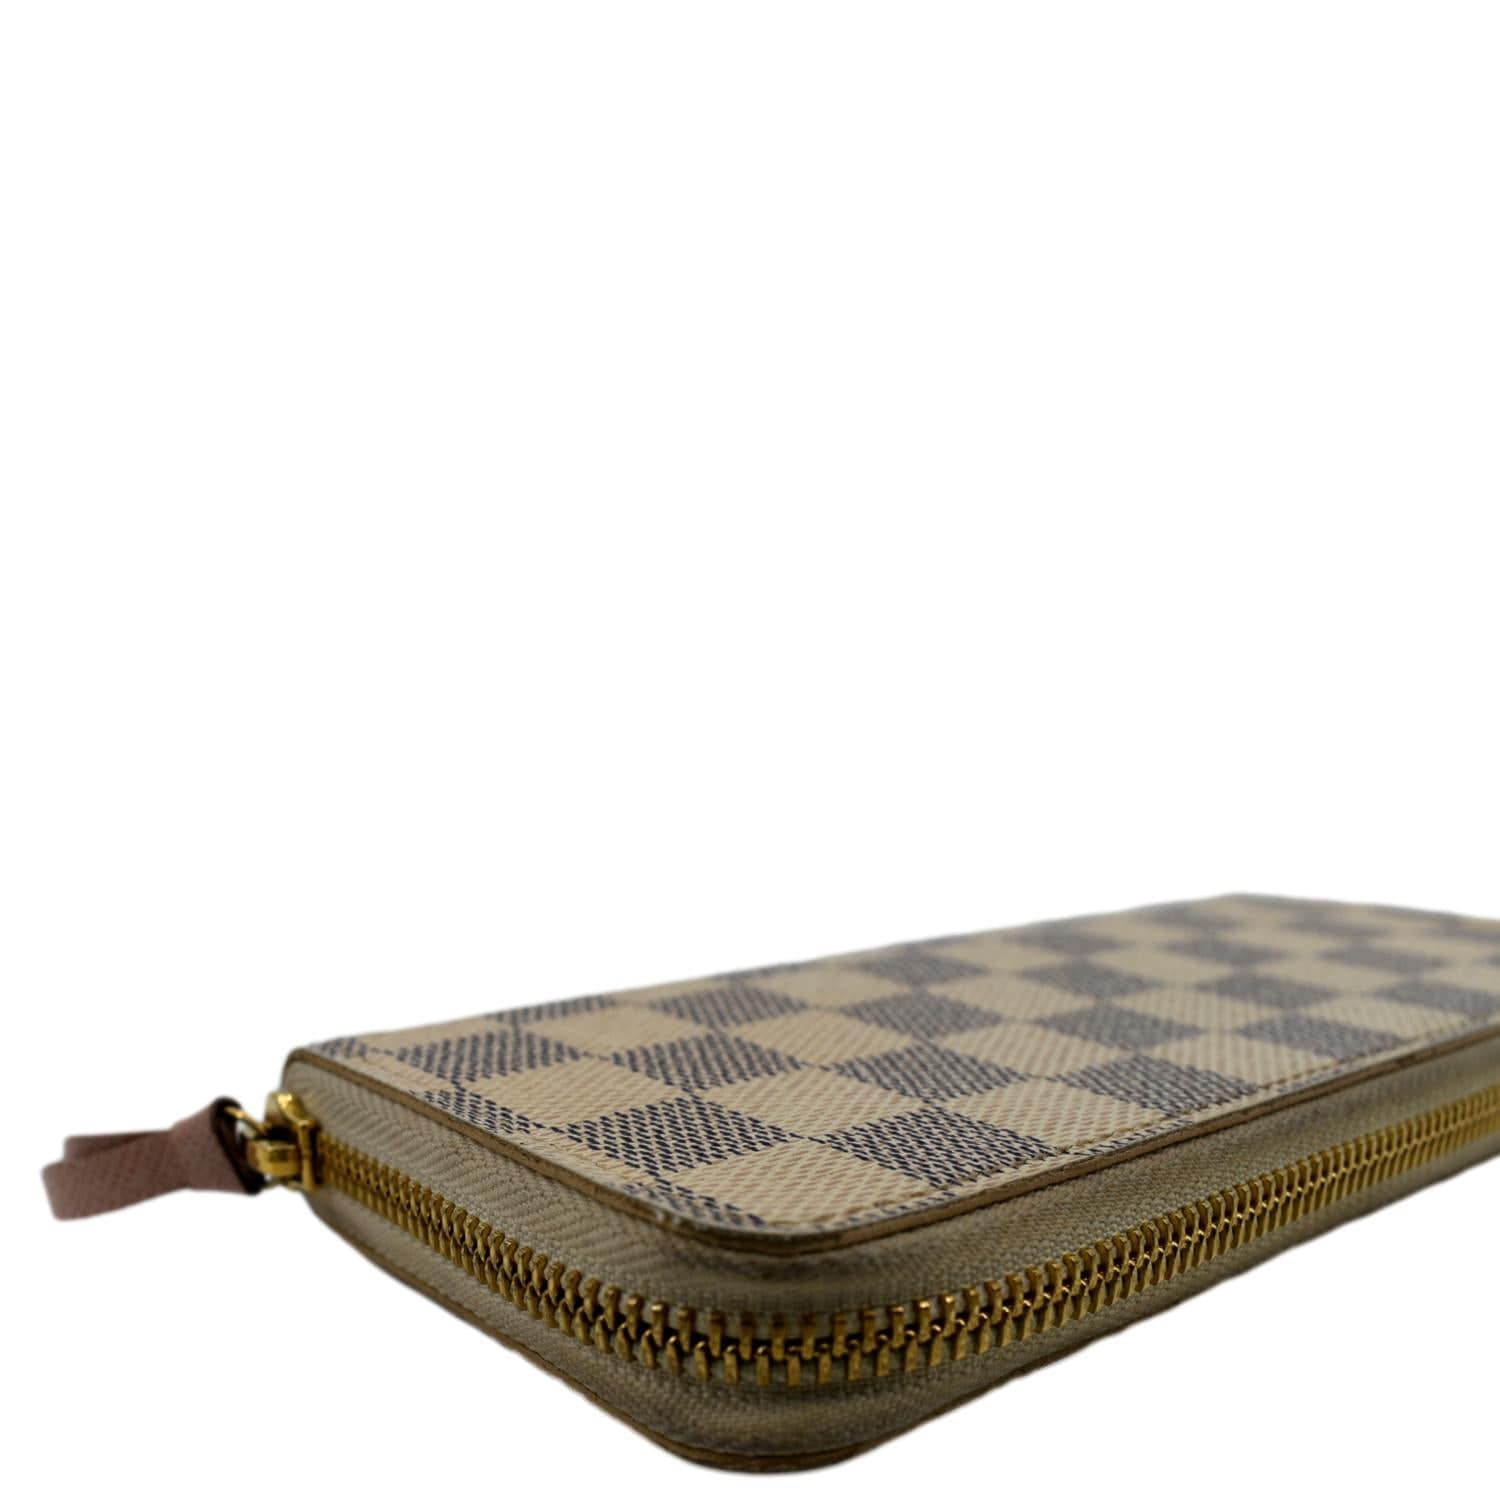 Louis Vuitton Damier Azur Clemence Wallet Tan - A World Of Goods